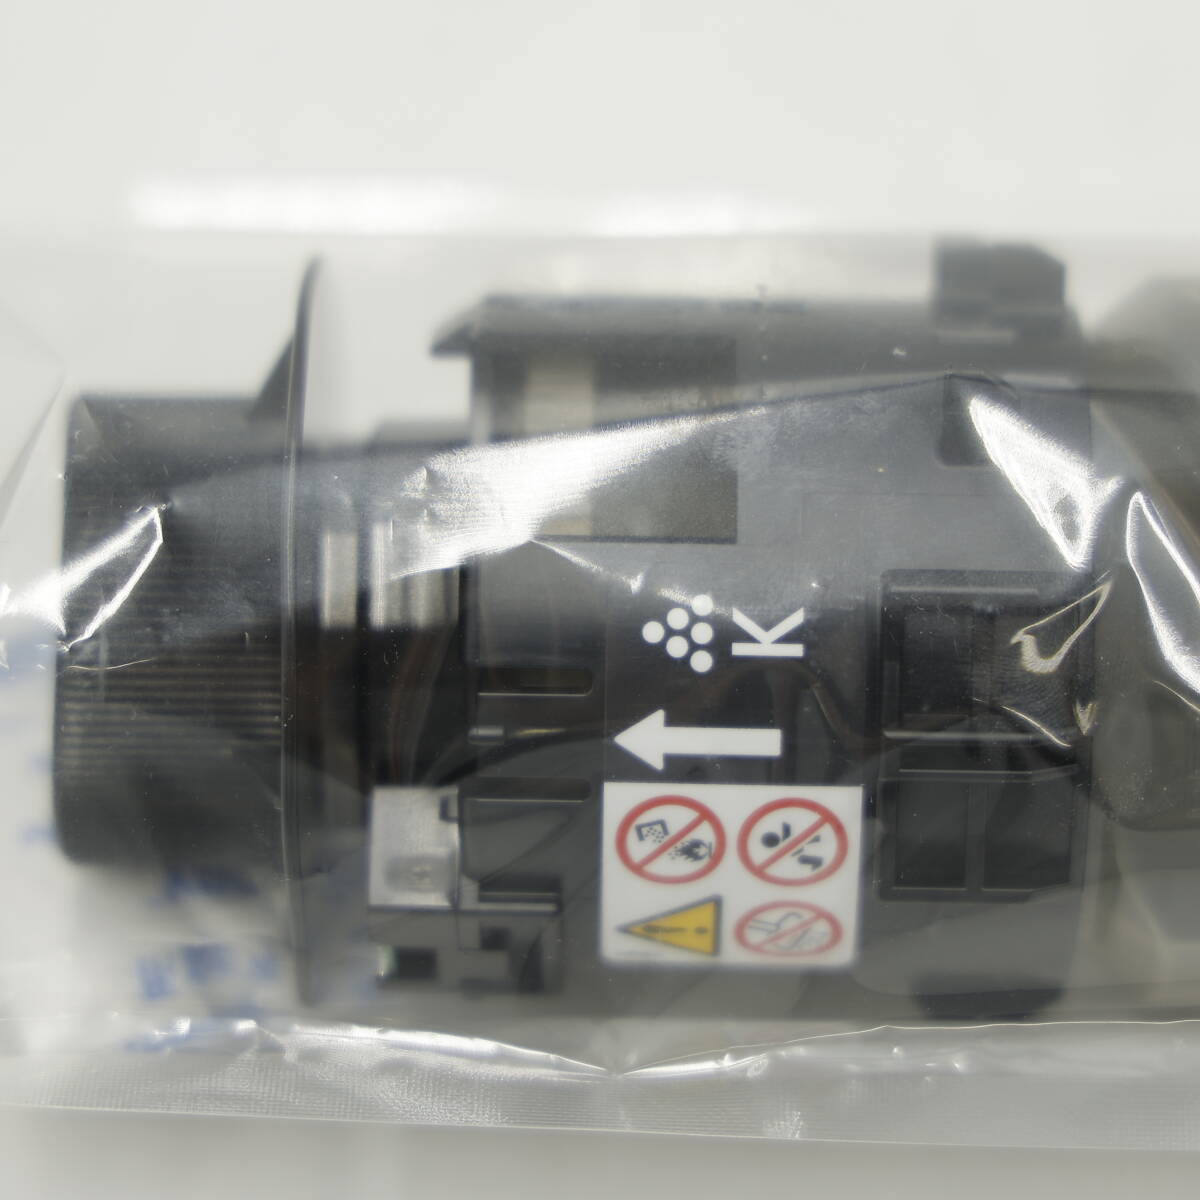 NW63 RICOH(リコー) MP Pトナー ブラック C3503 非売品 カラー複合機用 トナーカートリッジ【未開封】_画像2